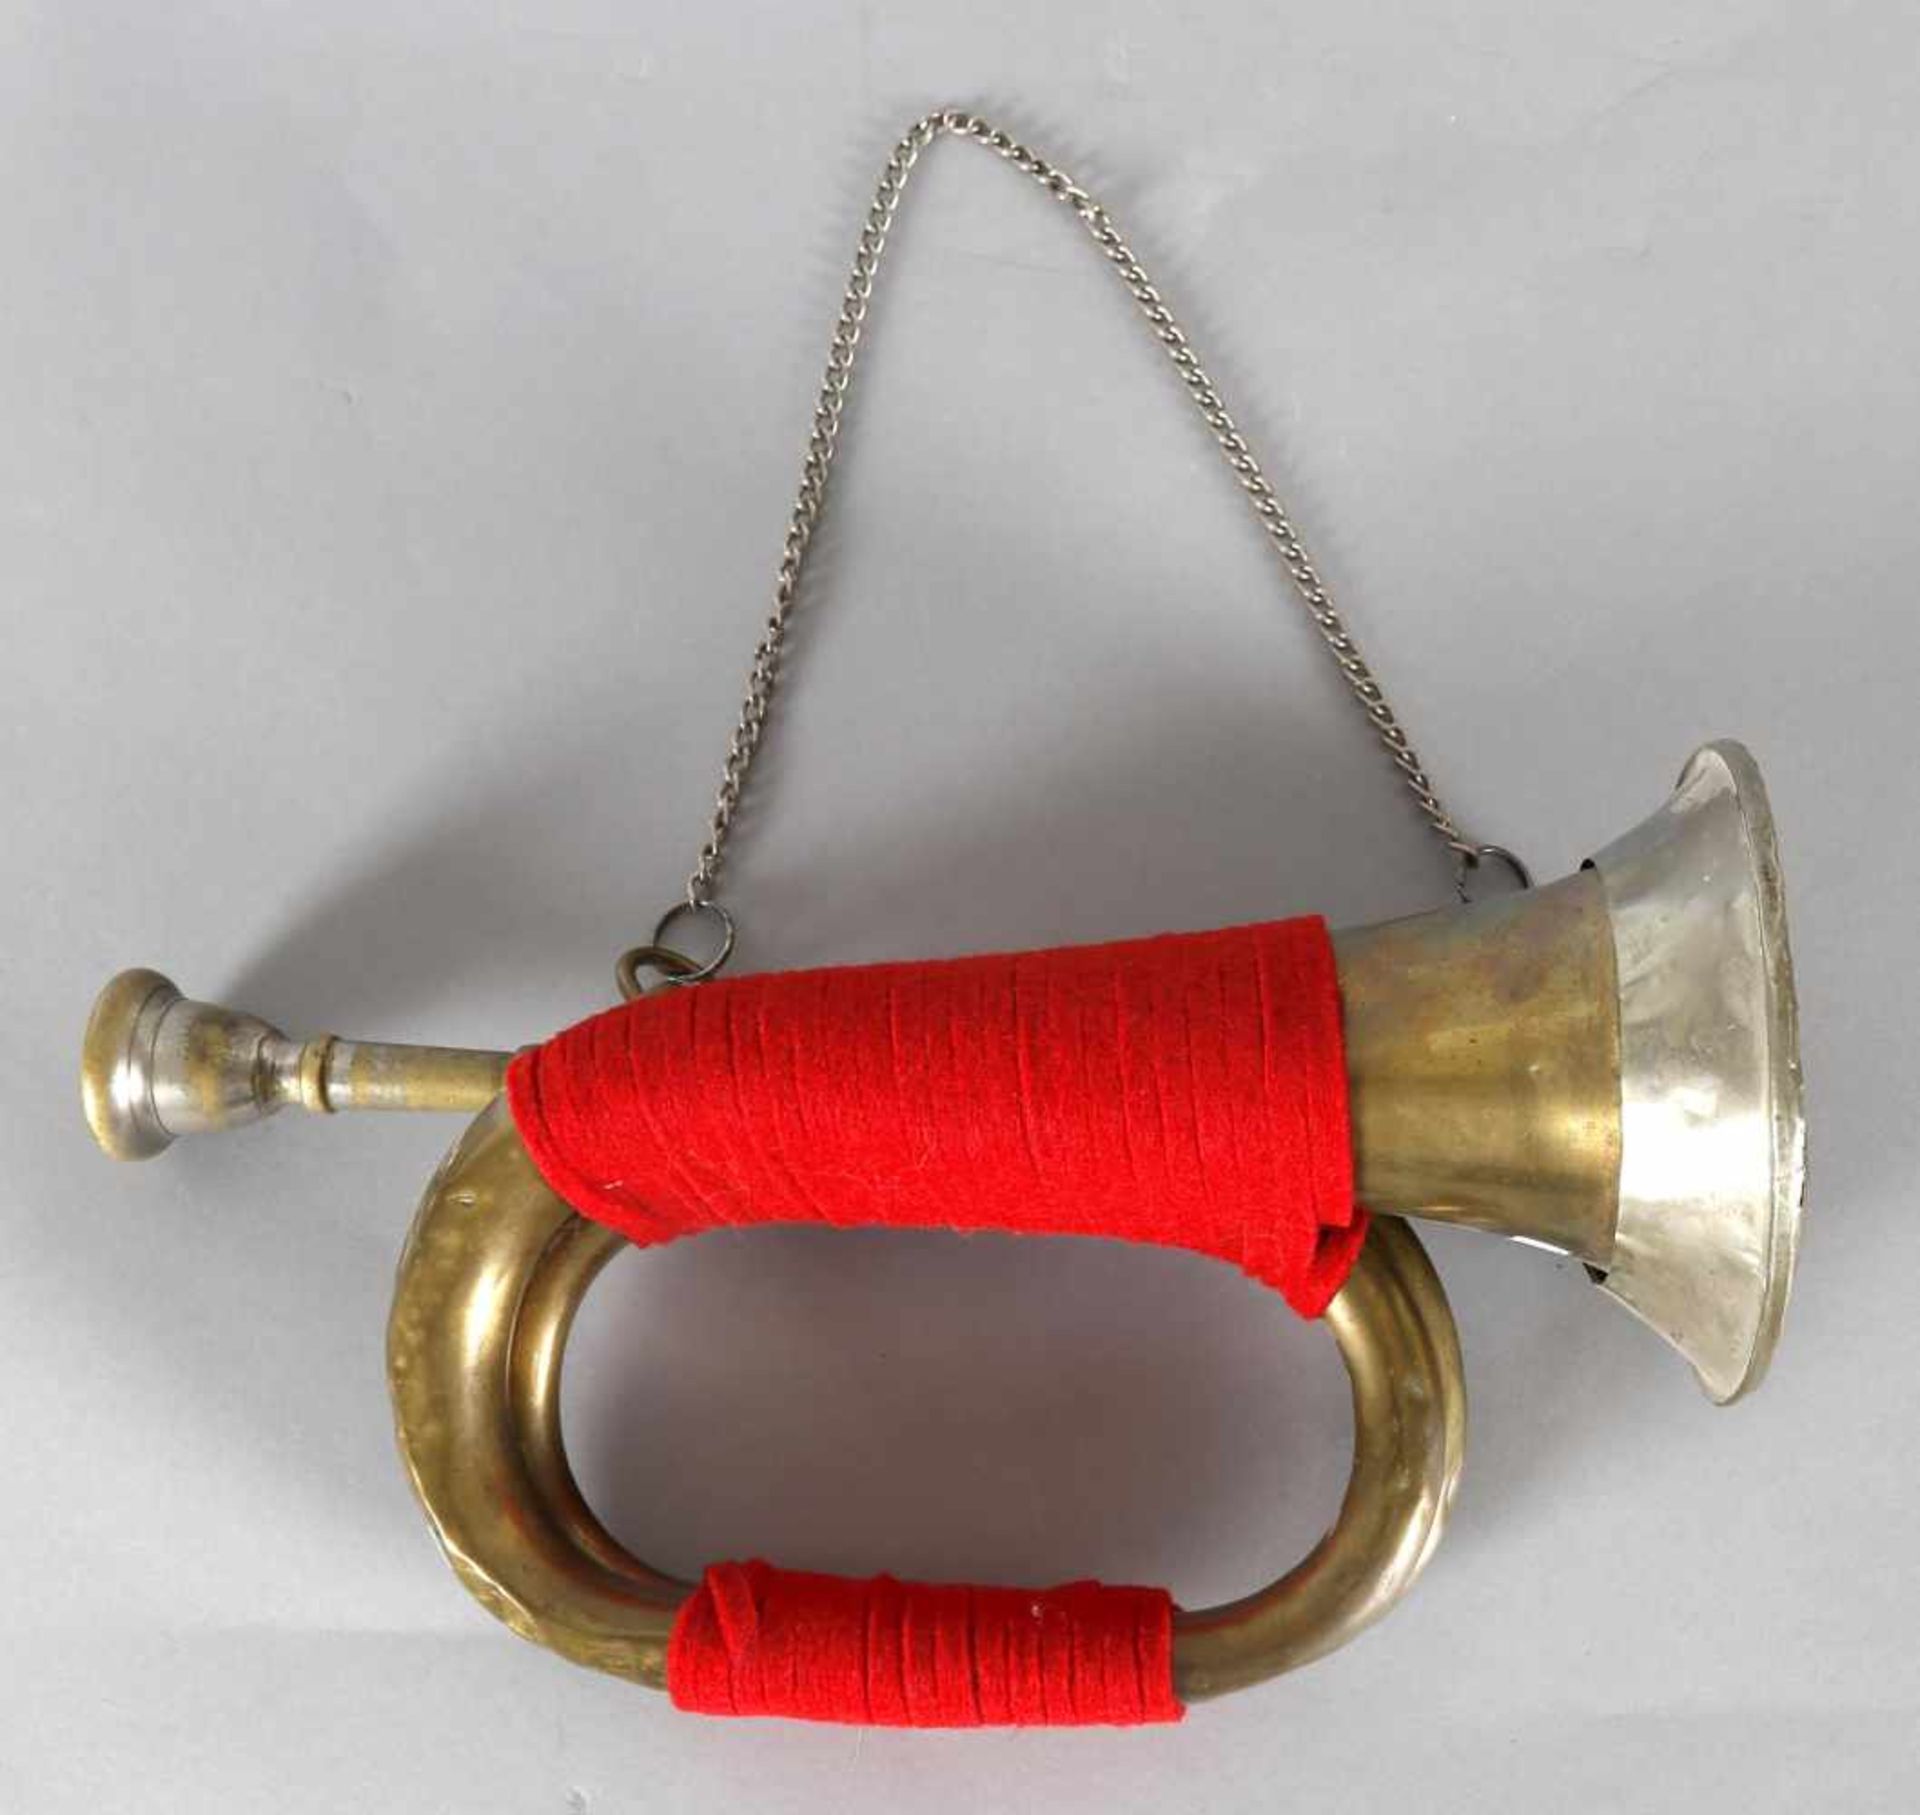 altes militärisches SignalhornMessing, Trichter mit Blech verstärkt, rote Wickelung, original